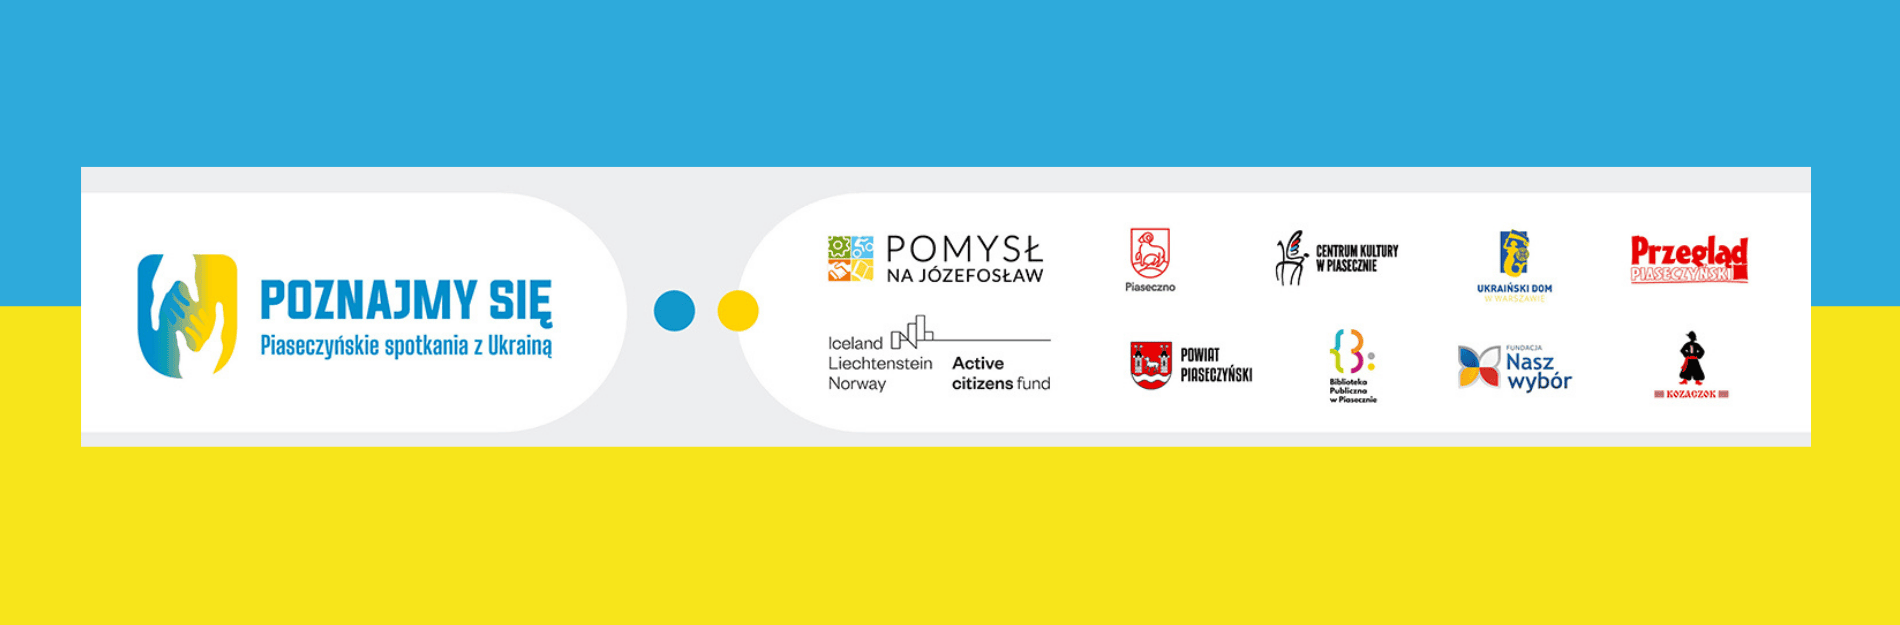 Poznajmy się - piaseczyńskie spotkania z Ukrainą - baner projektu z logotypami partnerów